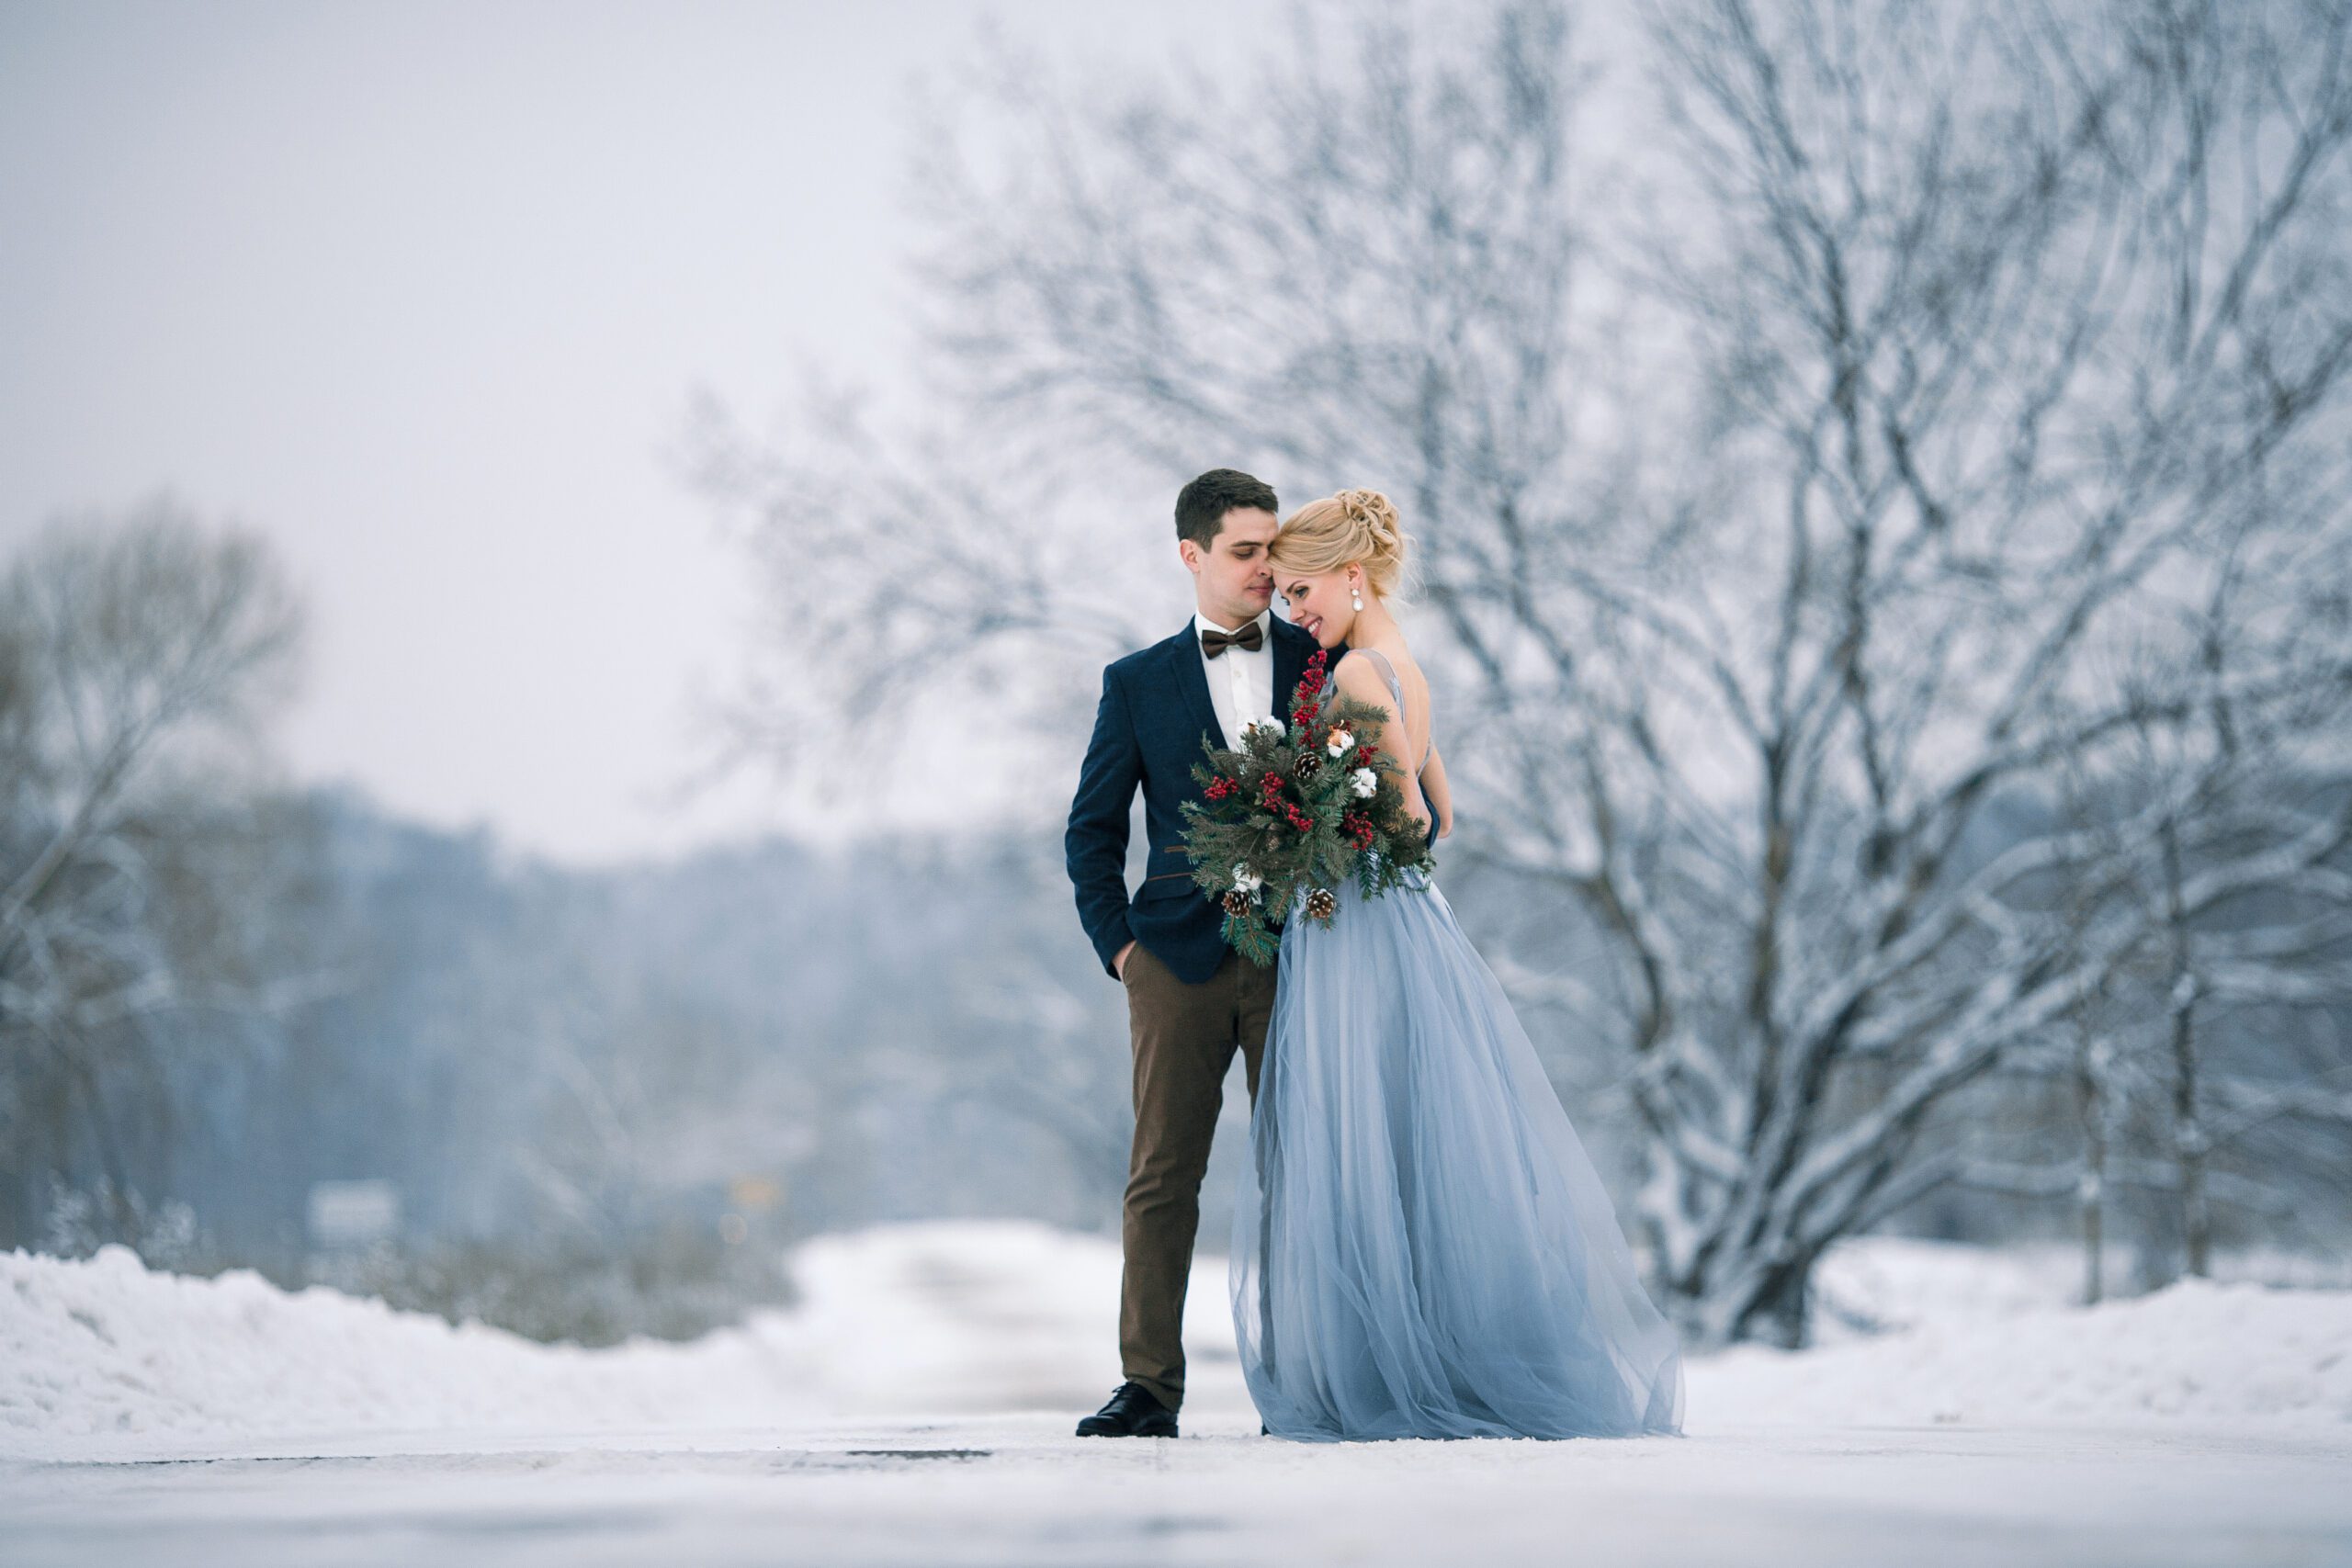 Hochzeit im Winter, was muss man beachten?